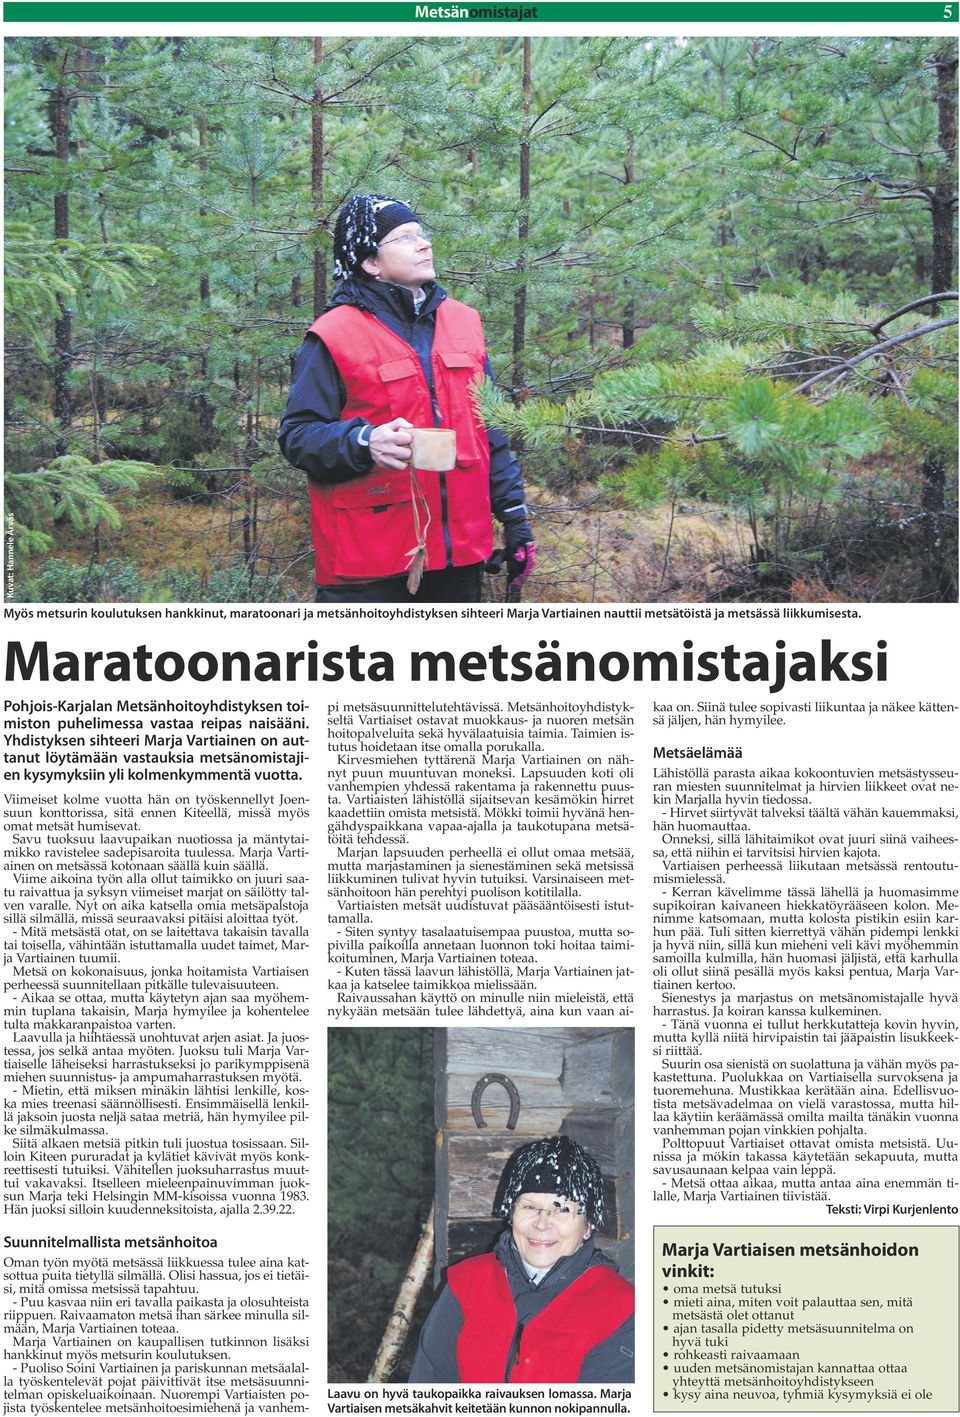 Yhdistyksen sihteeri Marja Vartiainen on auttanut löytämään vastauksia metsänomistajien kysymyksiin yli kolmenkymmentä vuotta.